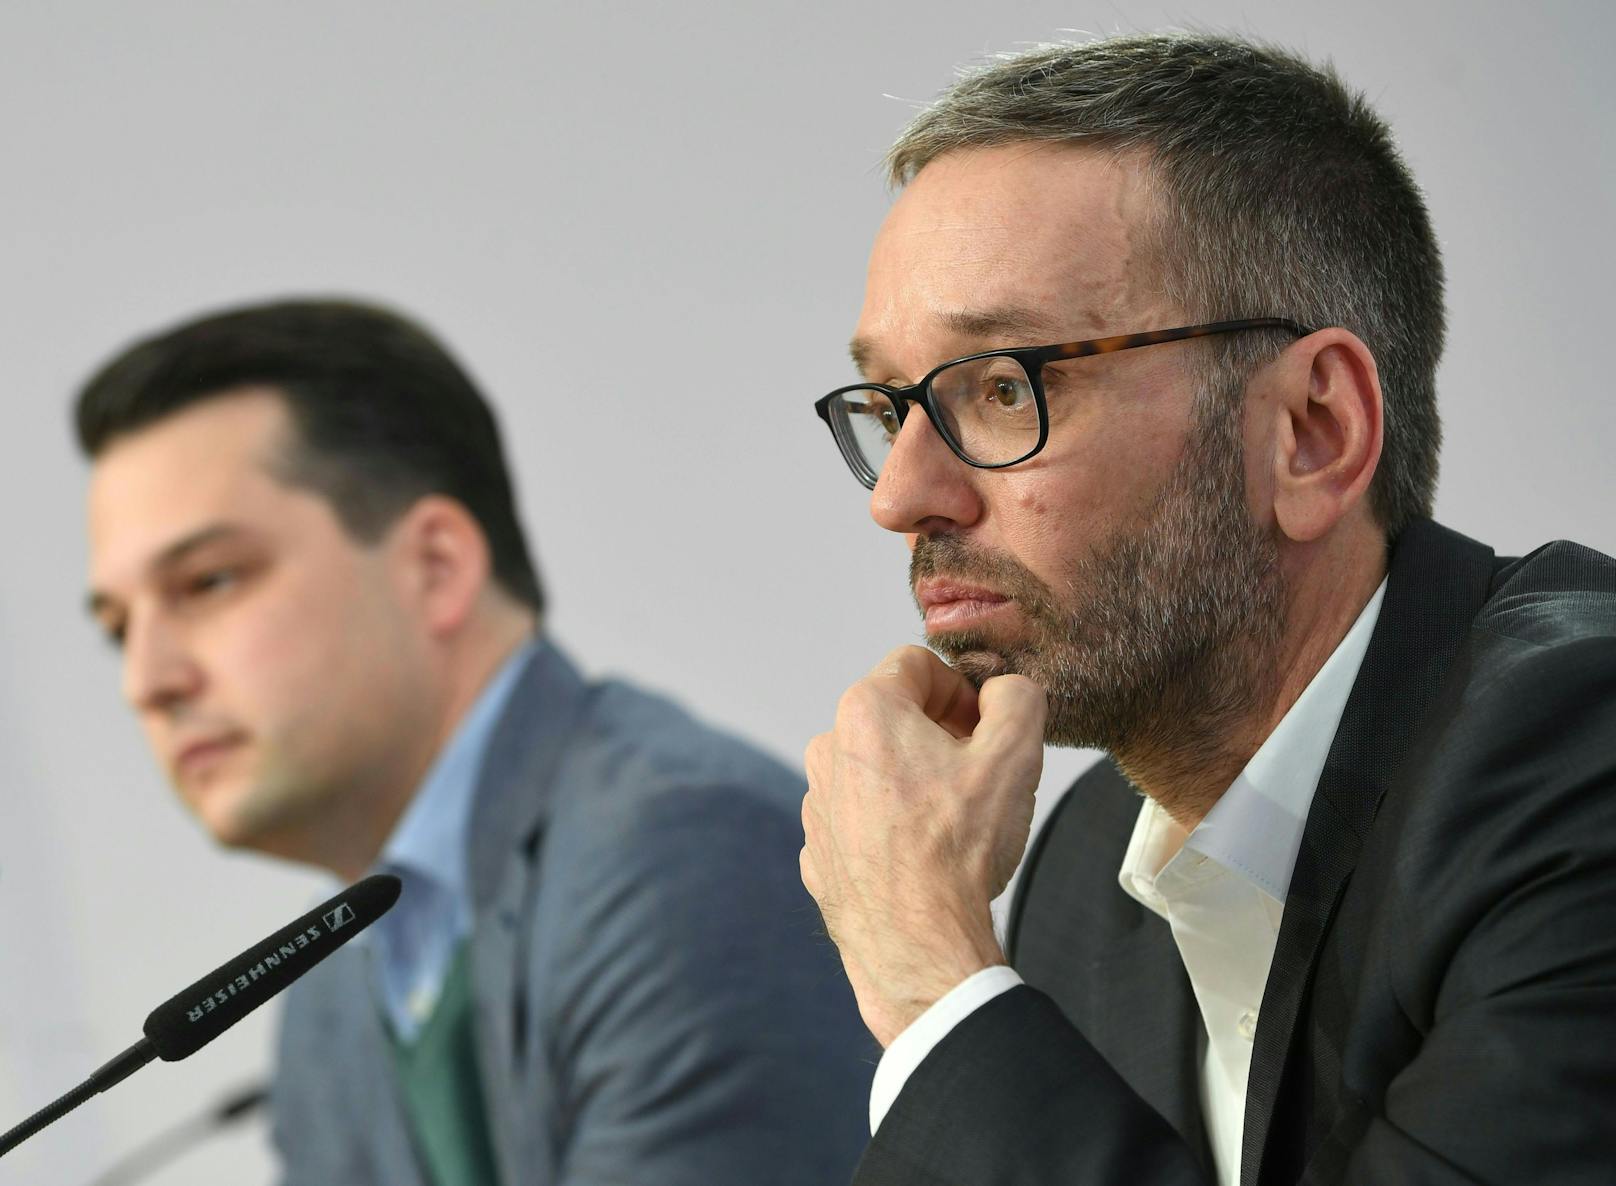 Der Wiener FPÖ-Chef Dominik Nepp und der Bundesparteiopbmann Herbert Kickl fordern eine "Aktion scharf" vor türkischen Wahllokalen.